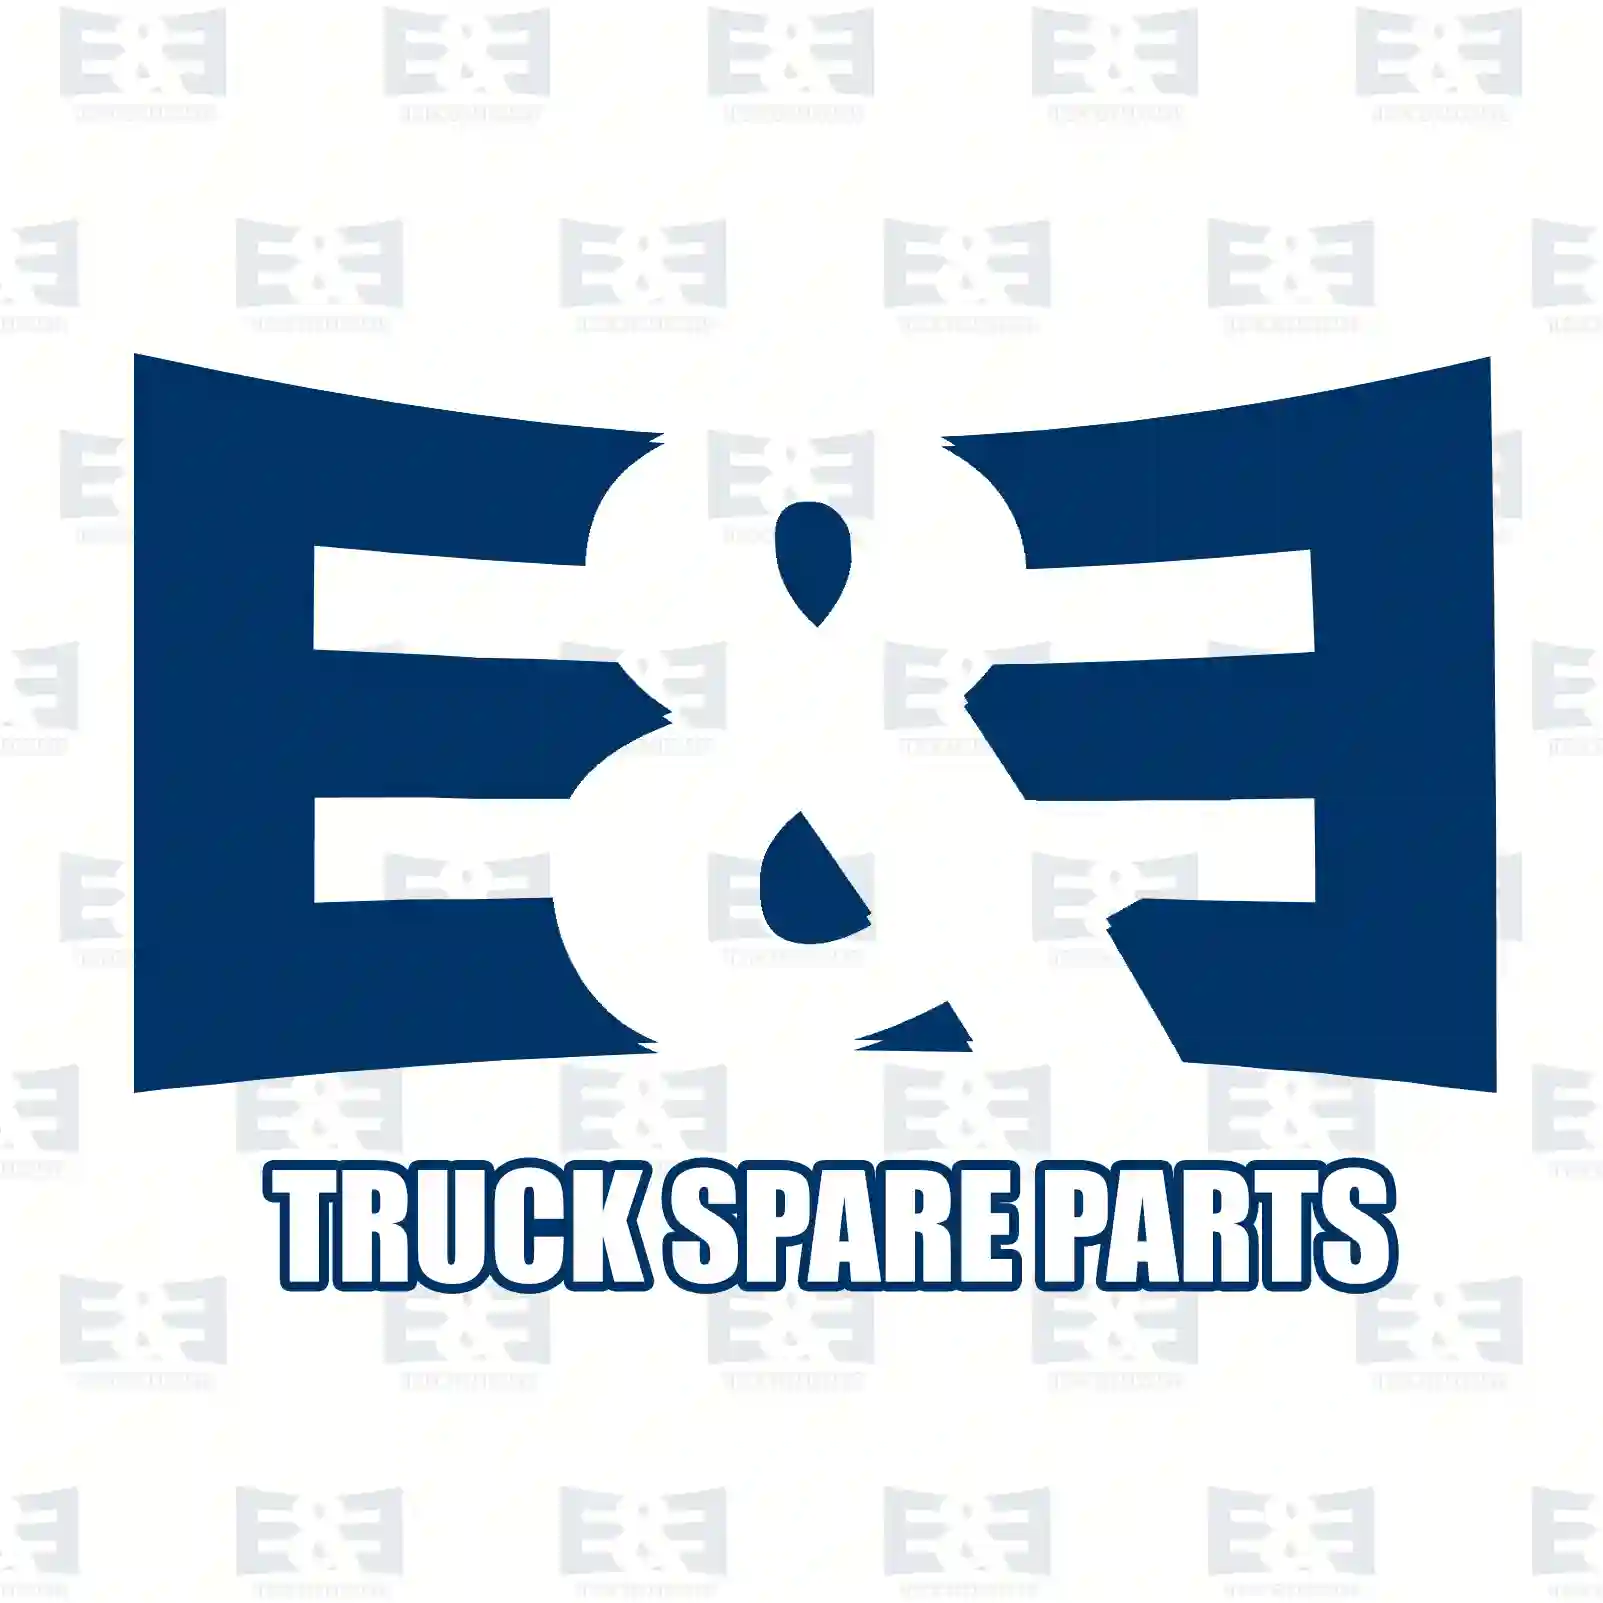 Gear, camshaft, 2E2206780, 1677847 ||  2E2206780 E&E Truck Spare Parts | Truck Spare Parts, Auotomotive Spare Parts Gear, camshaft, 2E2206780, 1677847 ||  2E2206780 E&E Truck Spare Parts | Truck Spare Parts, Auotomotive Spare Parts